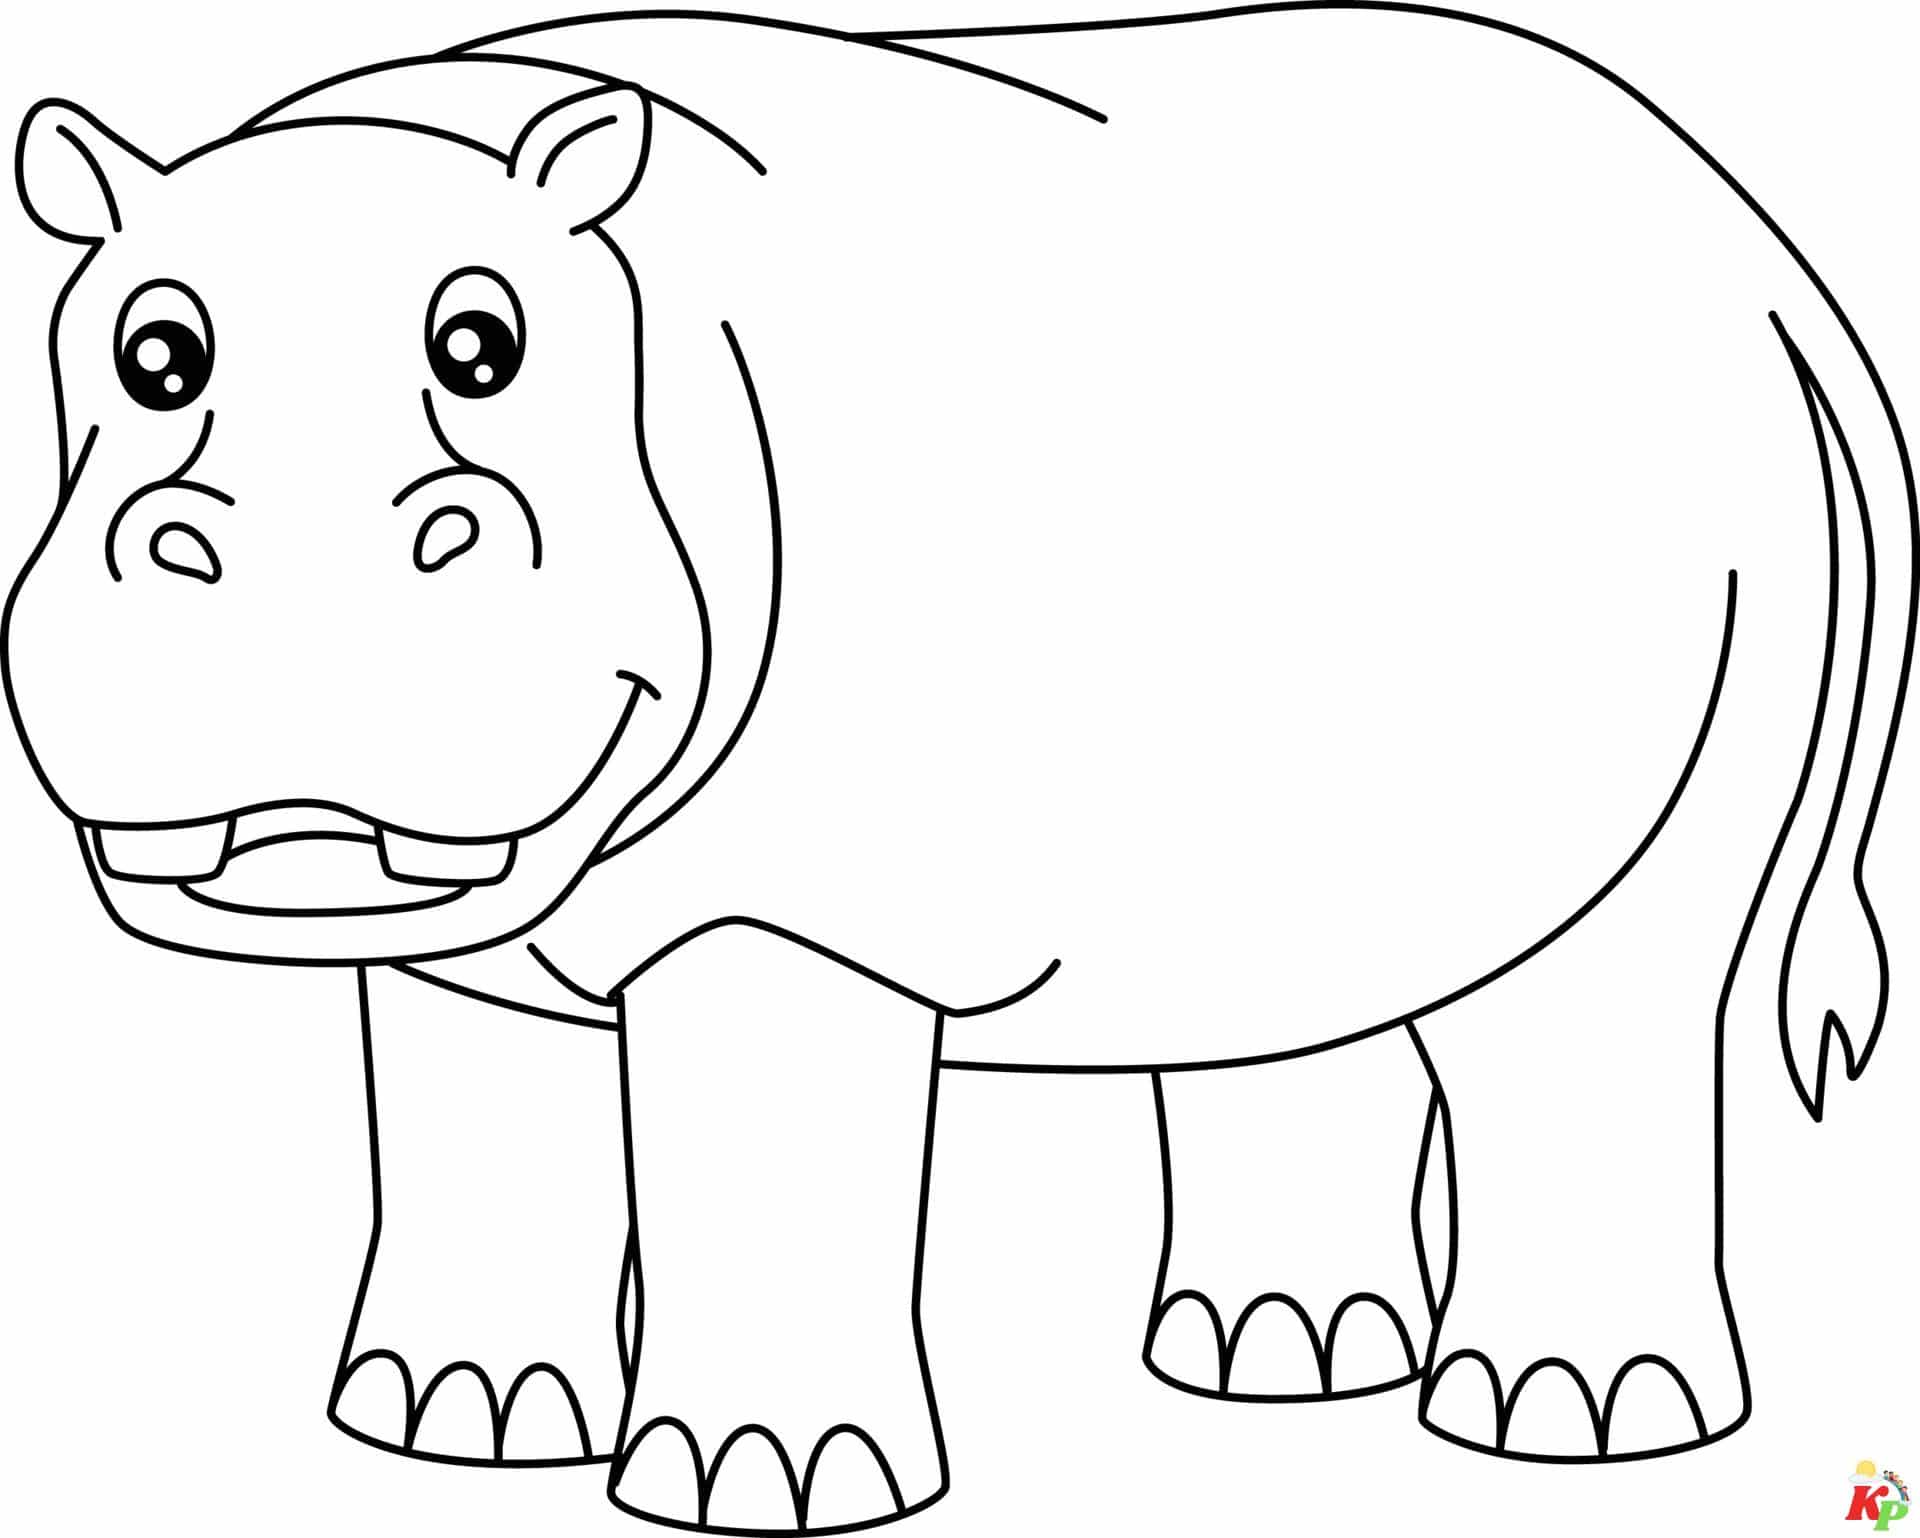 Nijlpaard (14)